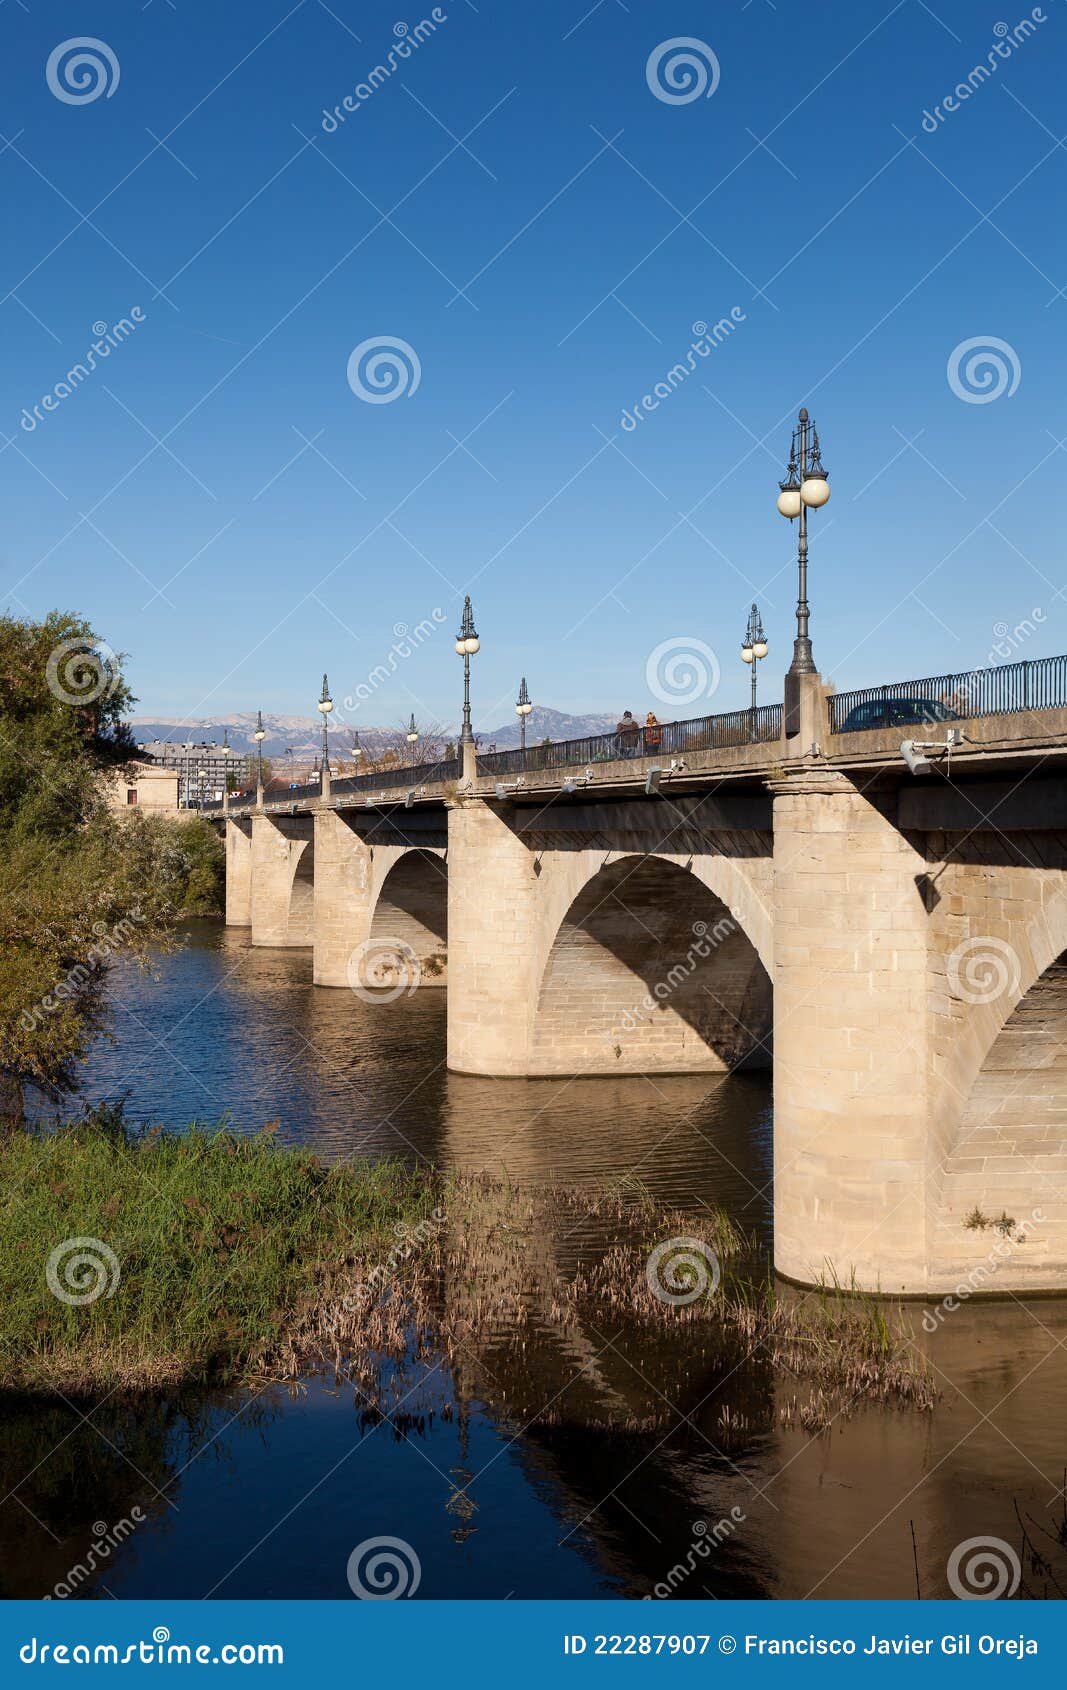 bridge of stone